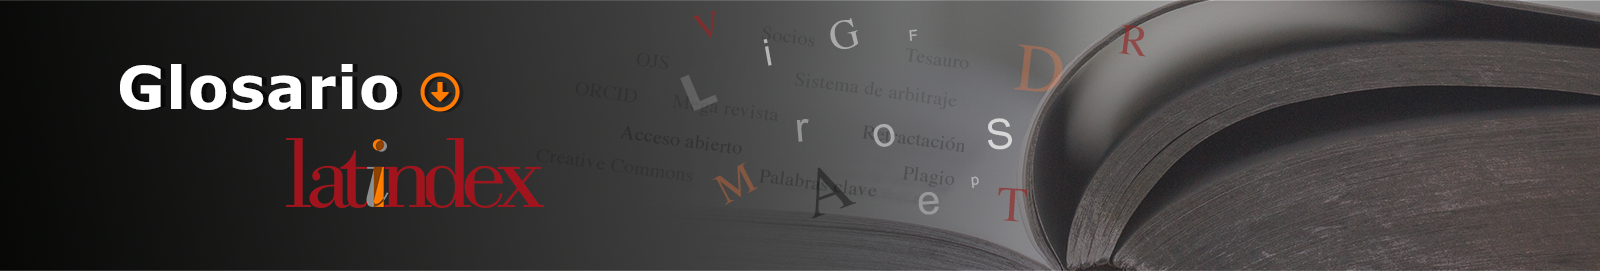 Imagen sobre el Glosario de Latindex